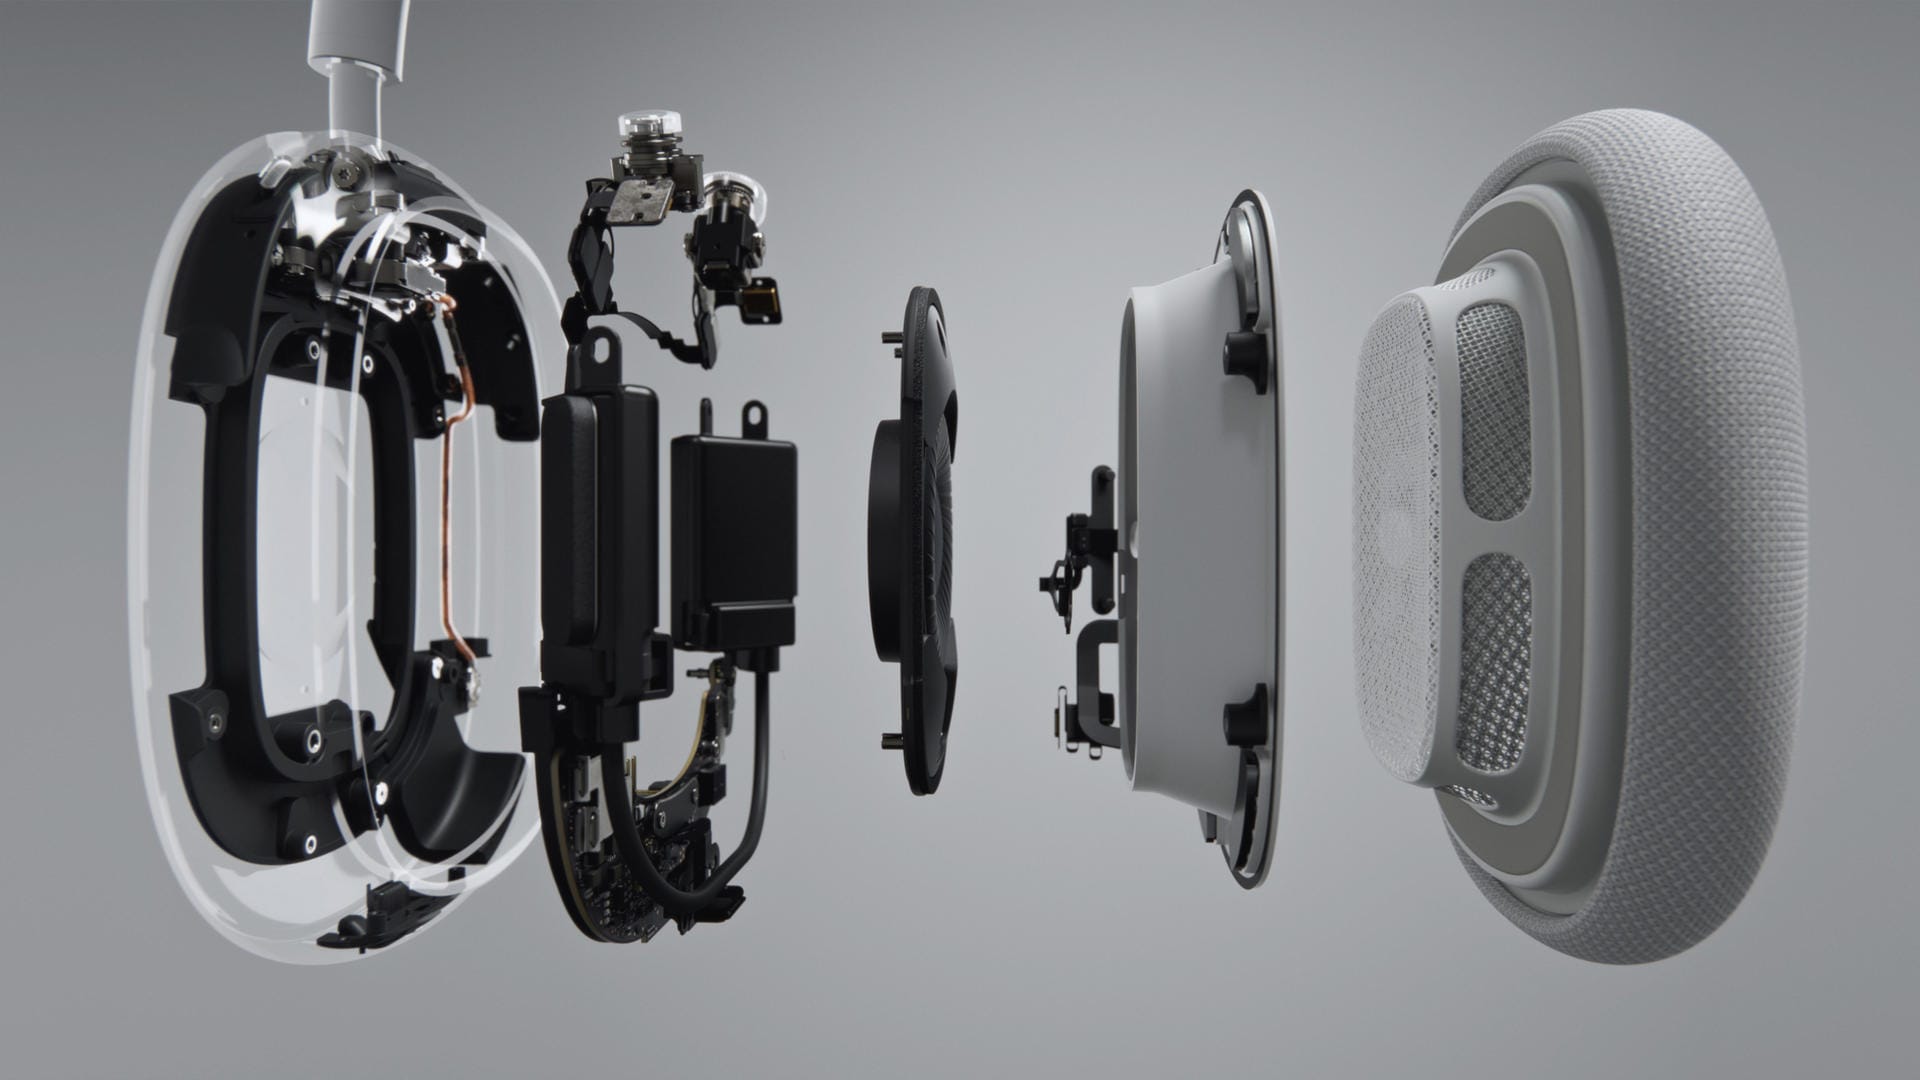 Kernelemente der Airpods Max sind die großen Treiber sowie integrierte Chips zur Sound-Berechnung.